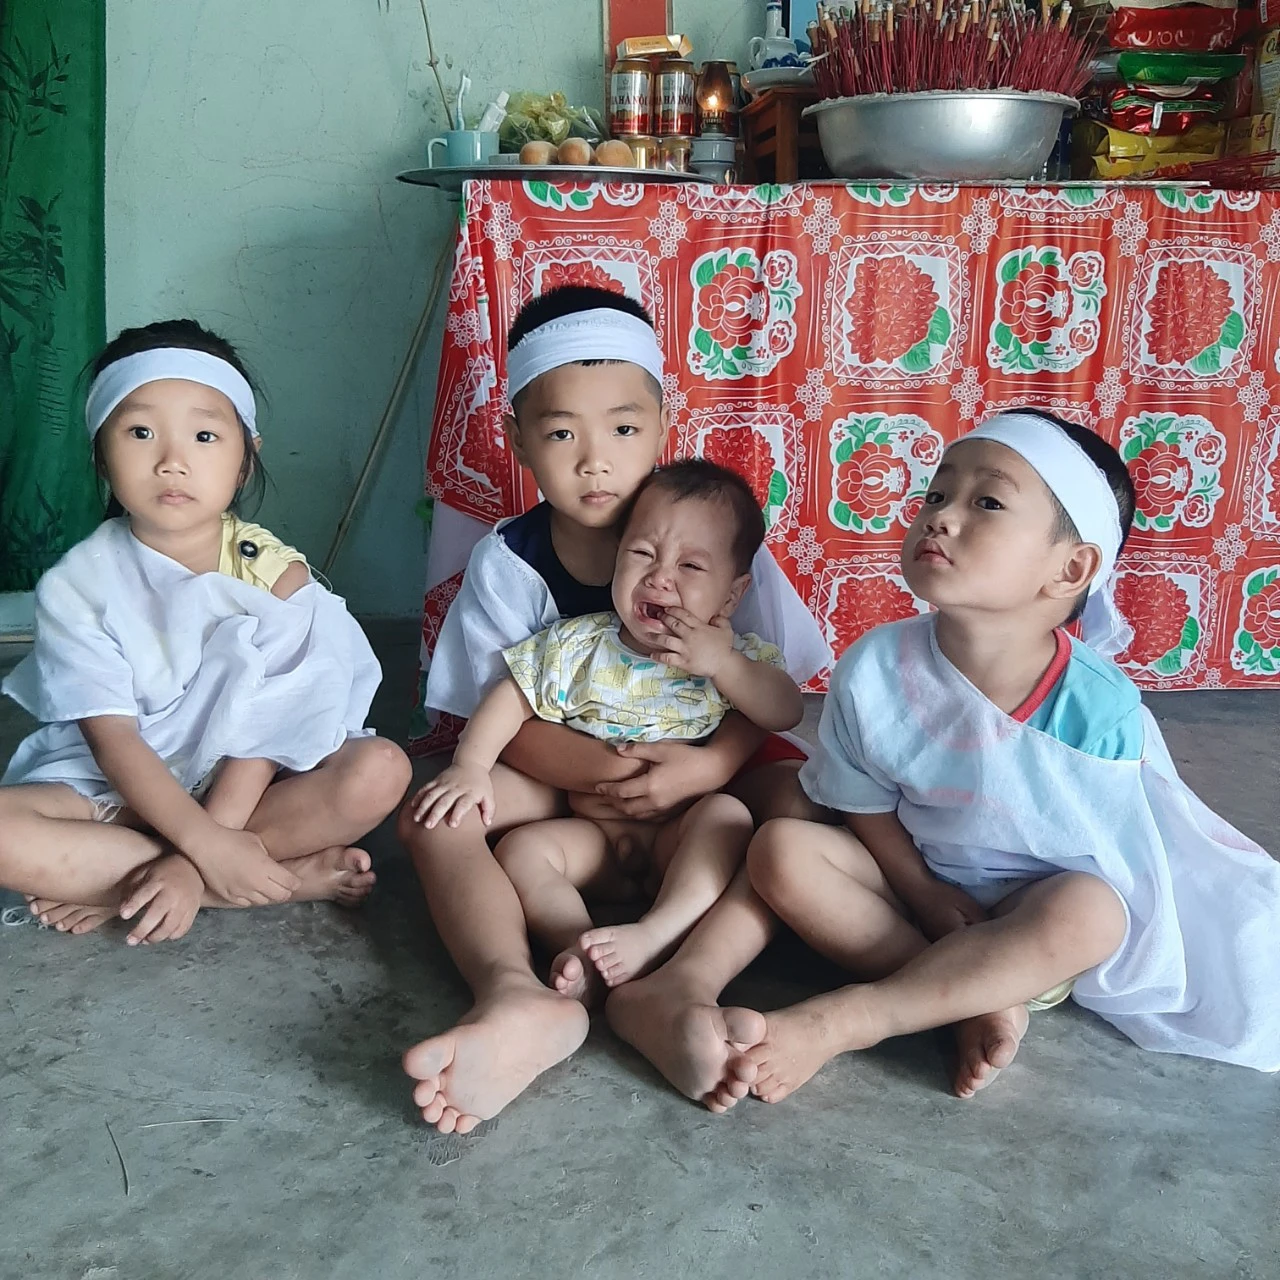 Nhói lòng hình ảnh 4 đứa trẻ thơ ngồi bên bàn thờ người cha vừa mất khóc đến lạc giọng vì khát sữa - Ảnh 1.